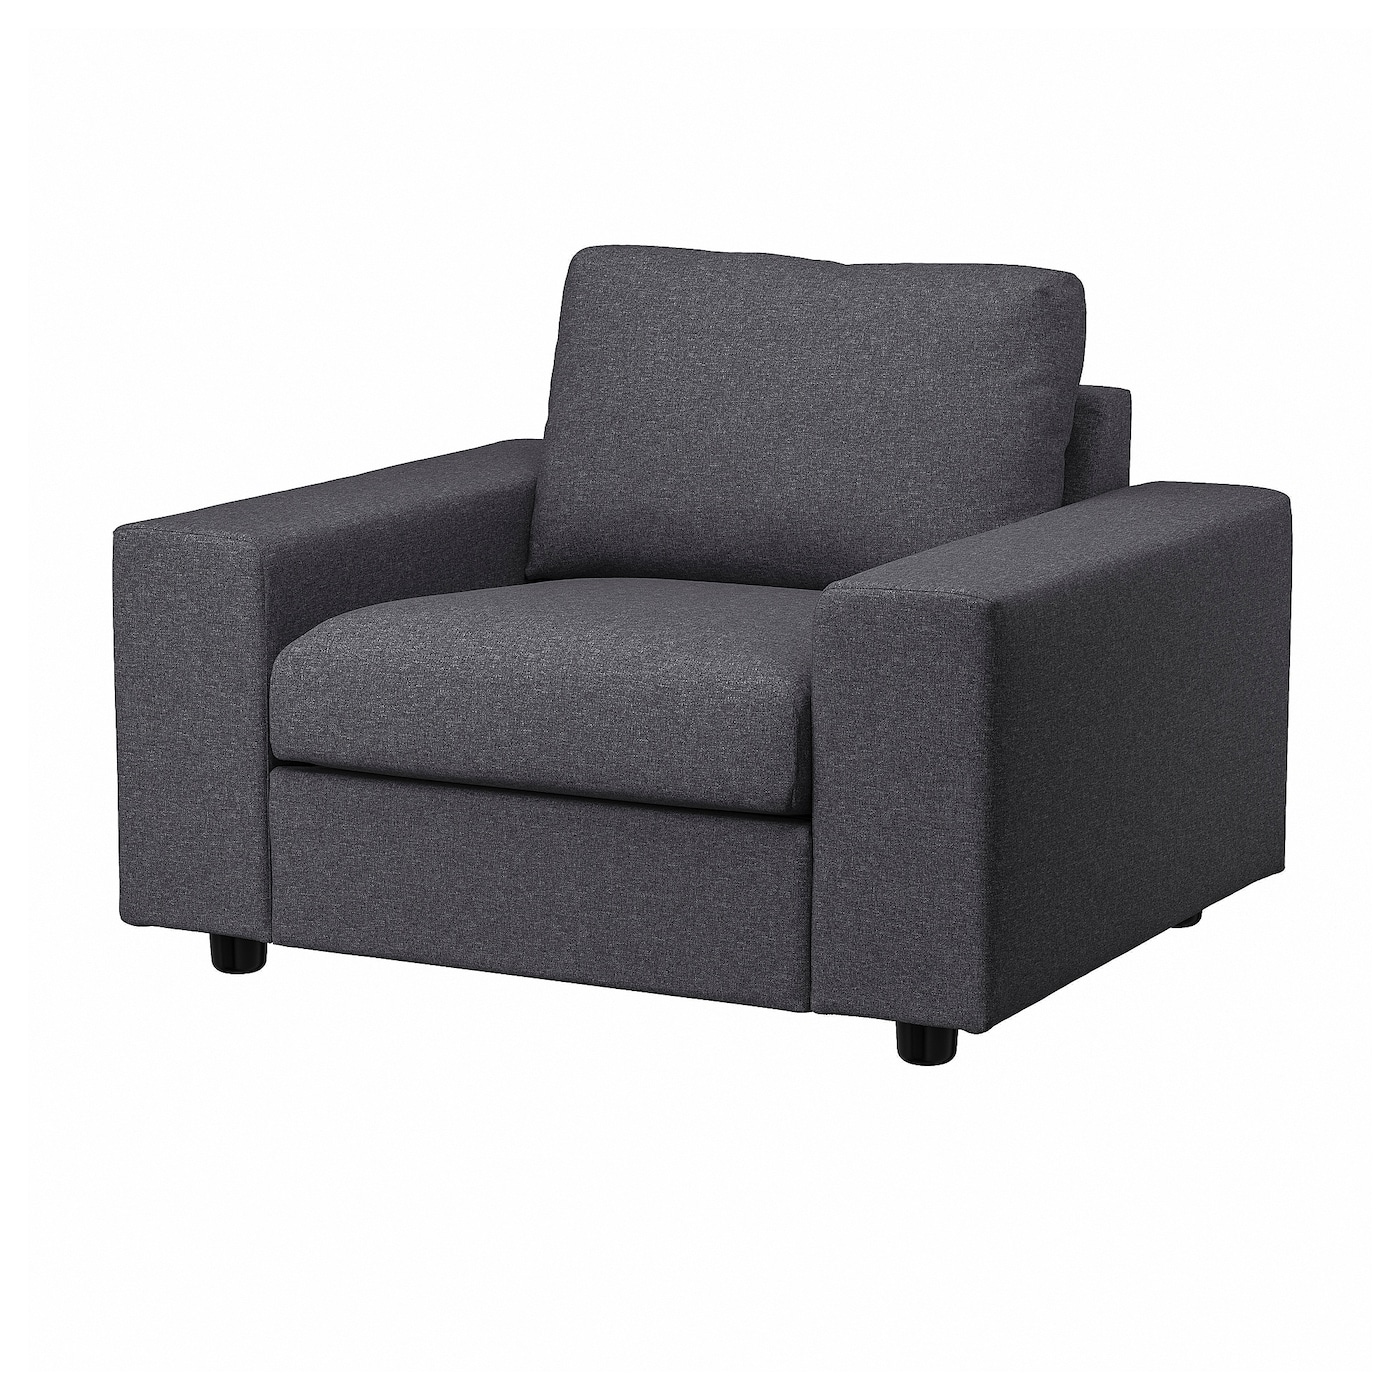 ВИМЛЕ Кресло, с широкими подлокотниками/Гуннаред средний серый VIMLE IKEA кресло мягкое тутси скорость серый модель детство